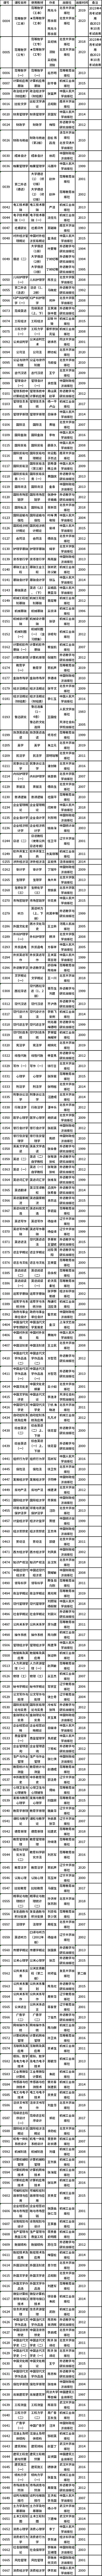 天津市2023年自考课程使用教材表